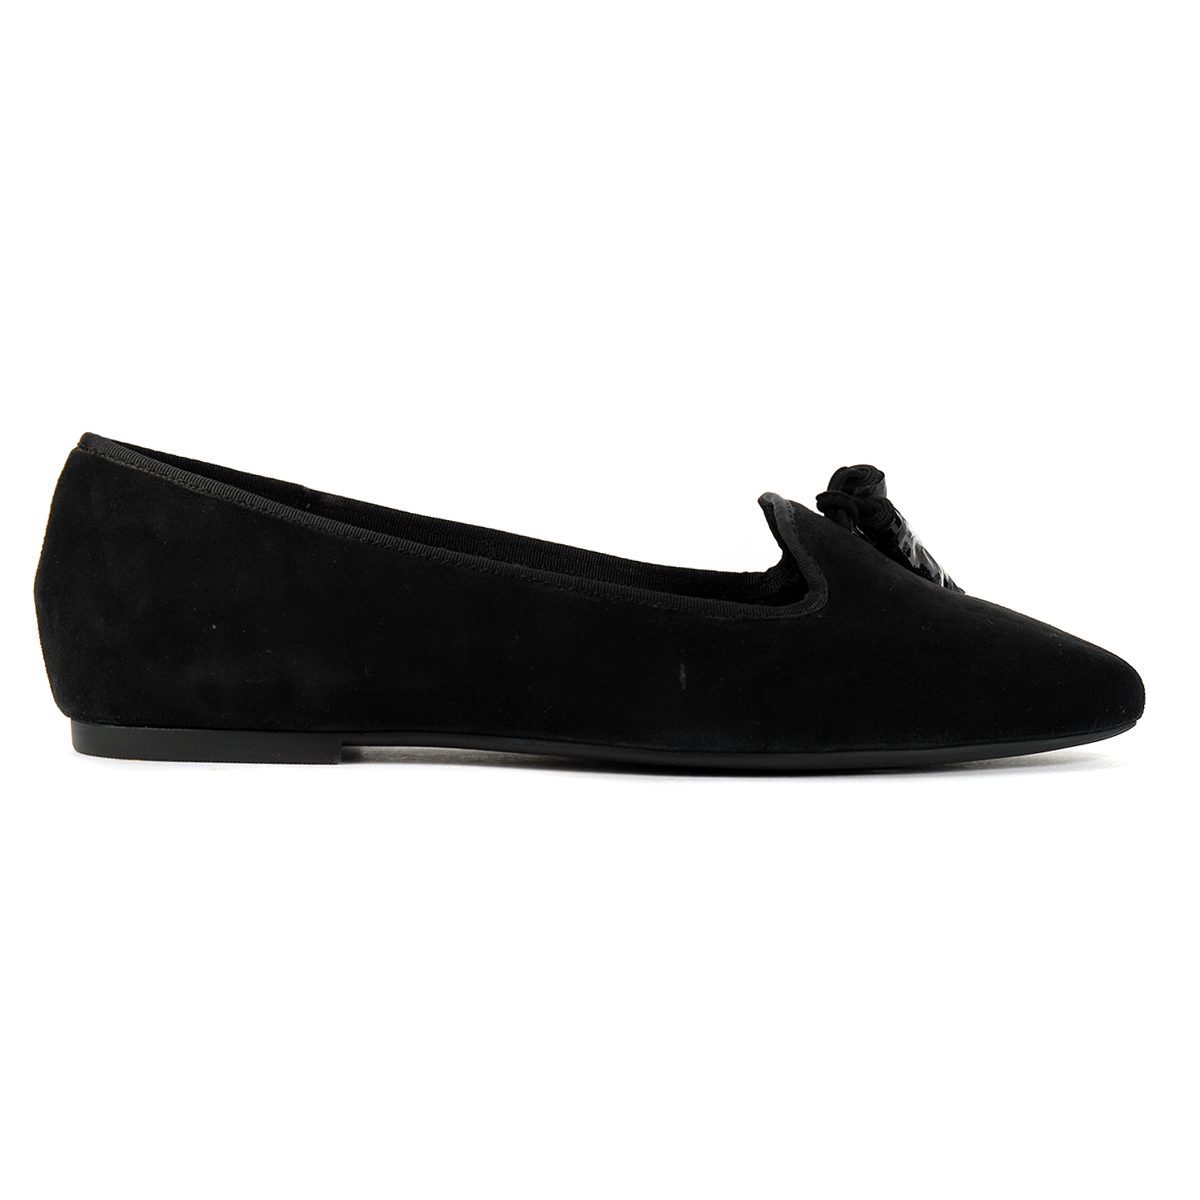 Puppies Women's Sadie Black Suede Tassel Slip-On Shoes HW06528-001 - WOOKI.COM